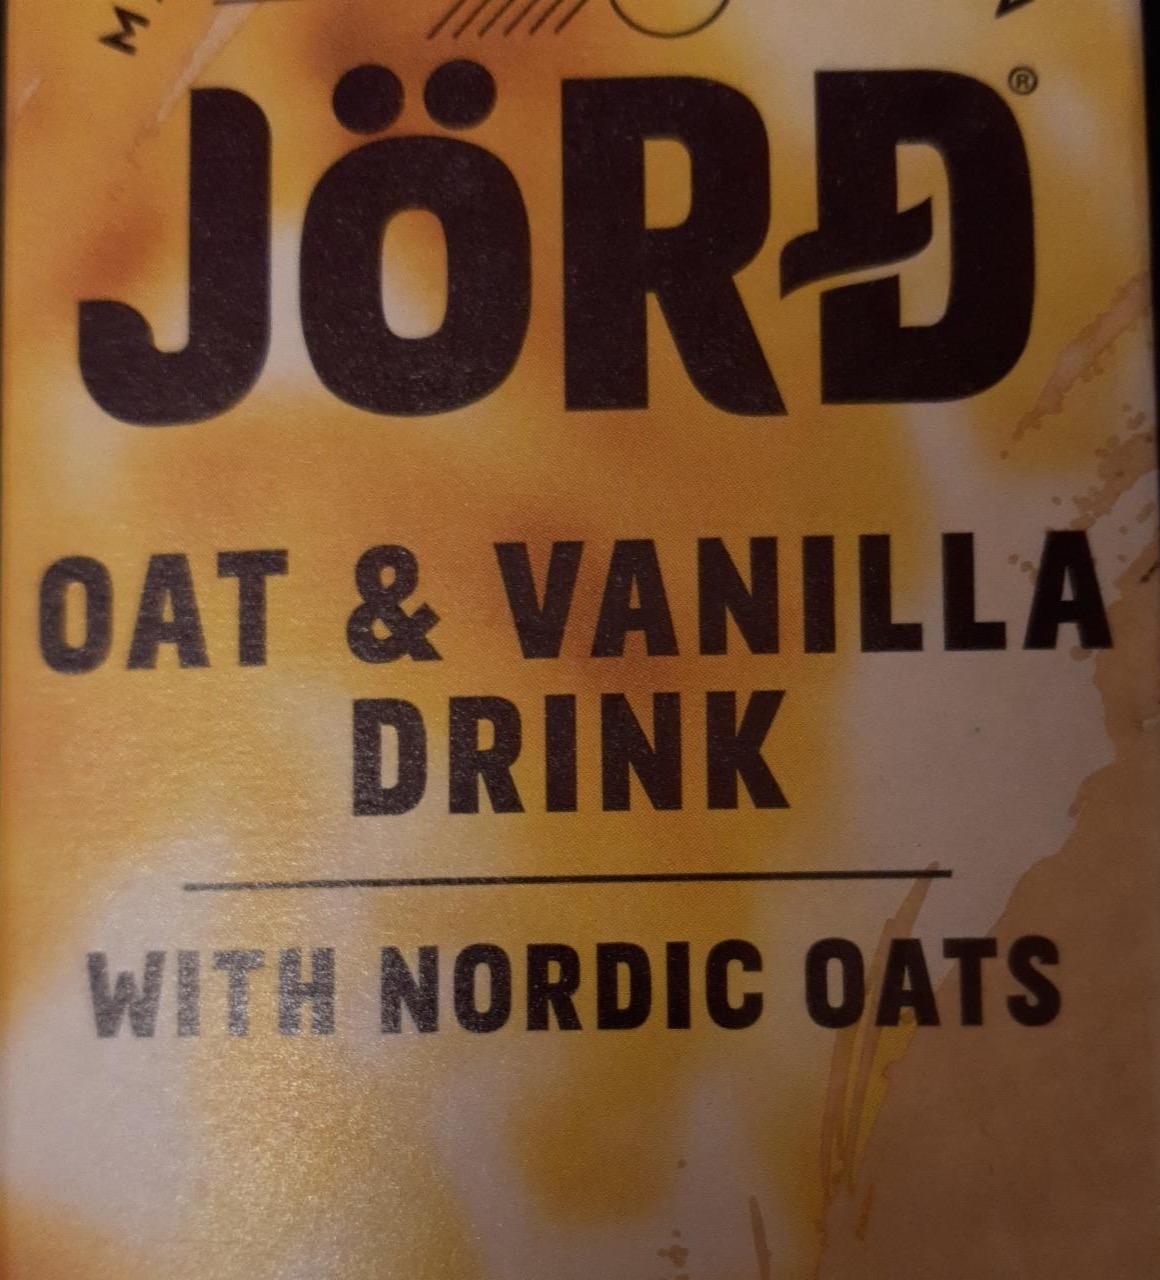 Fotografie - Oat & vanilla drink Jörd